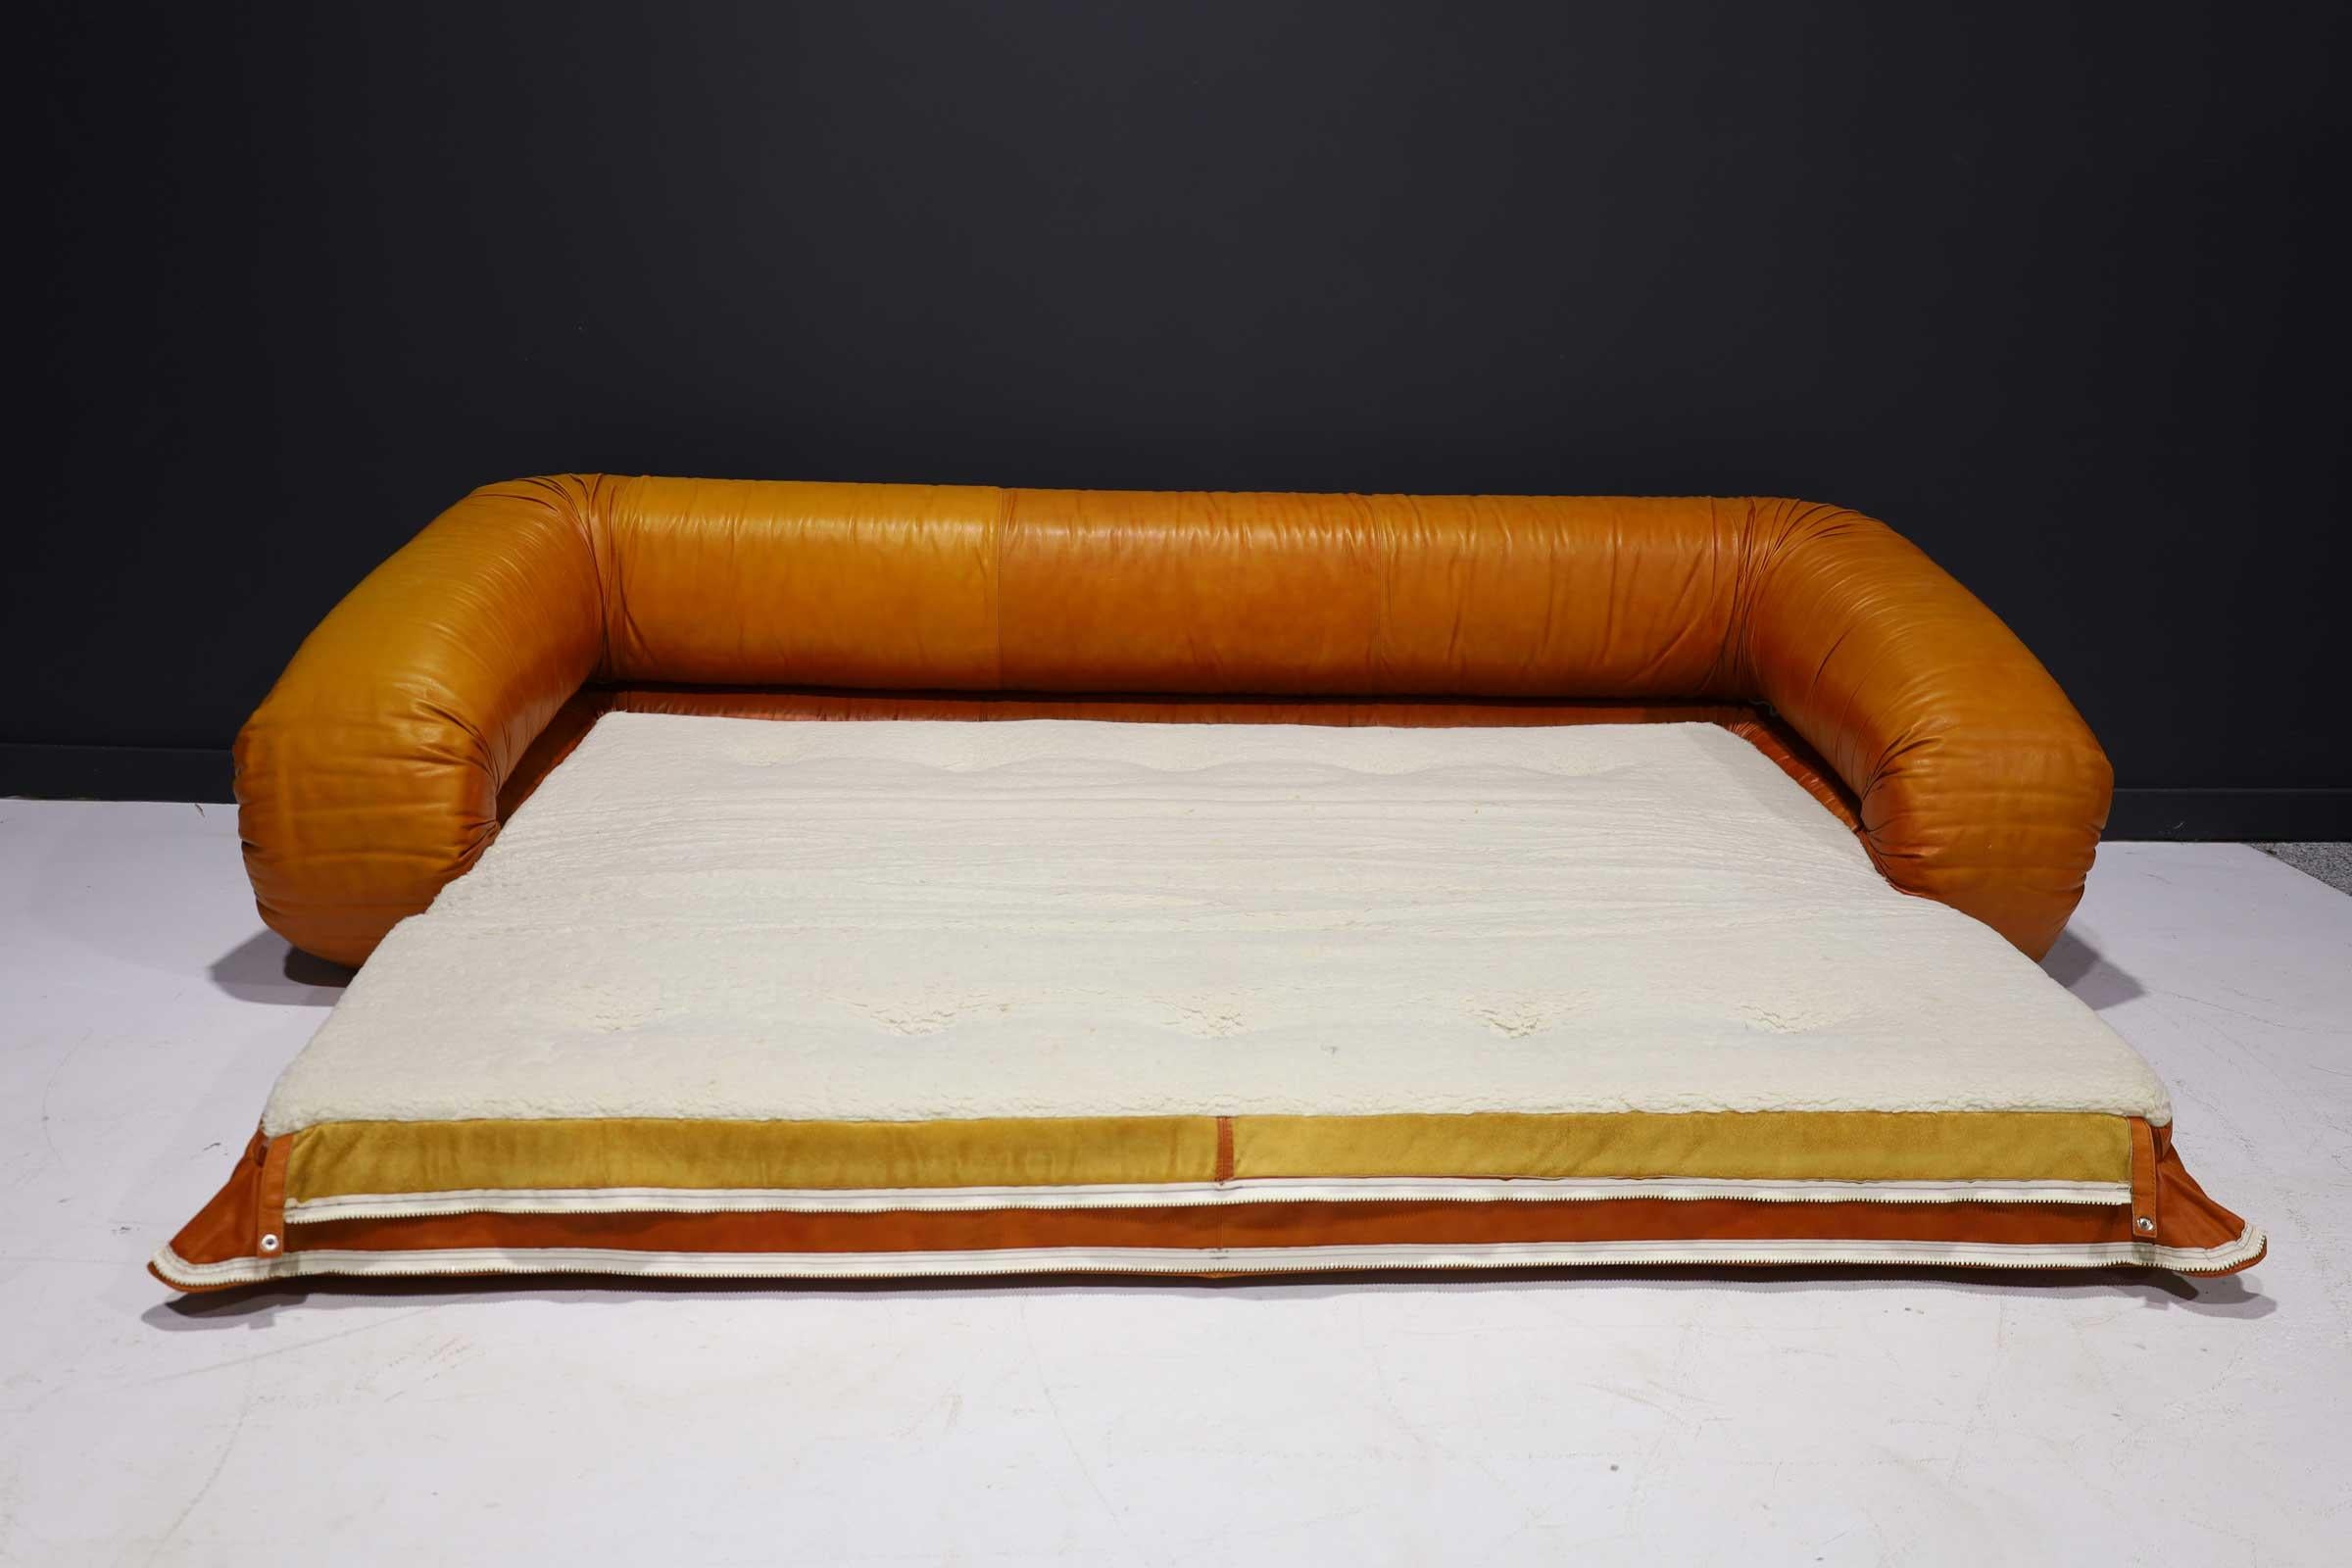 Italian Leather Anfibio Sofa Bed by Alessandro Becchi for Giovannetti Collezioni, 1970s